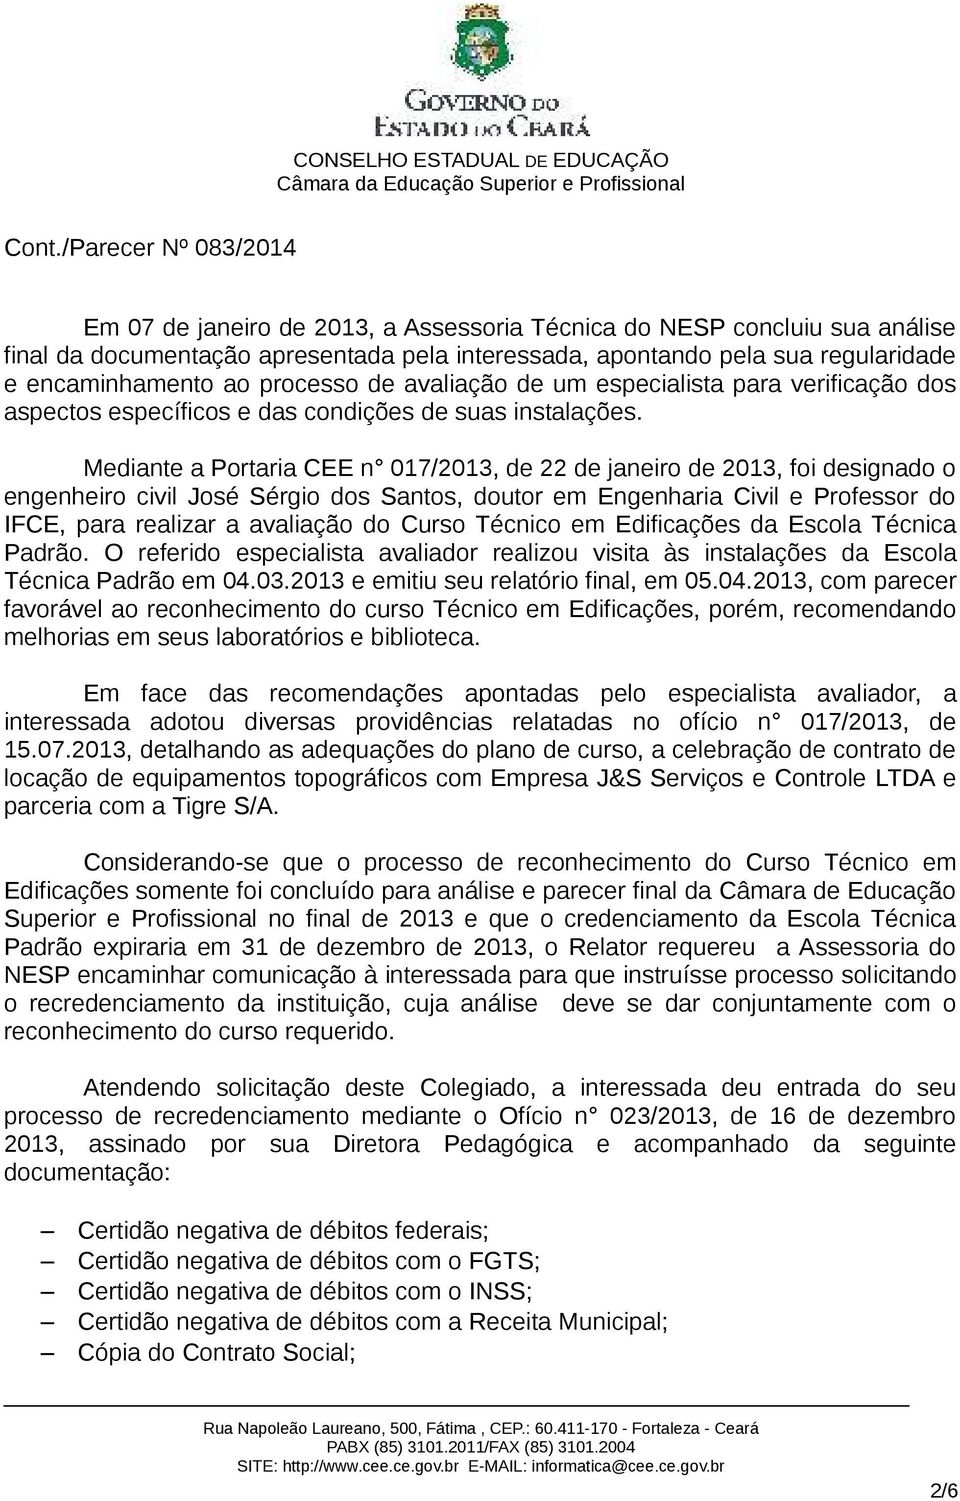 Mediante a Portaria CEE n 017/2013, de 22 de janeiro de 2013, foi designado o engenheiro civil José Sérgio dos Santos, doutor em Engenharia Civil e Professor do IFCE, para realizar a avaliação do